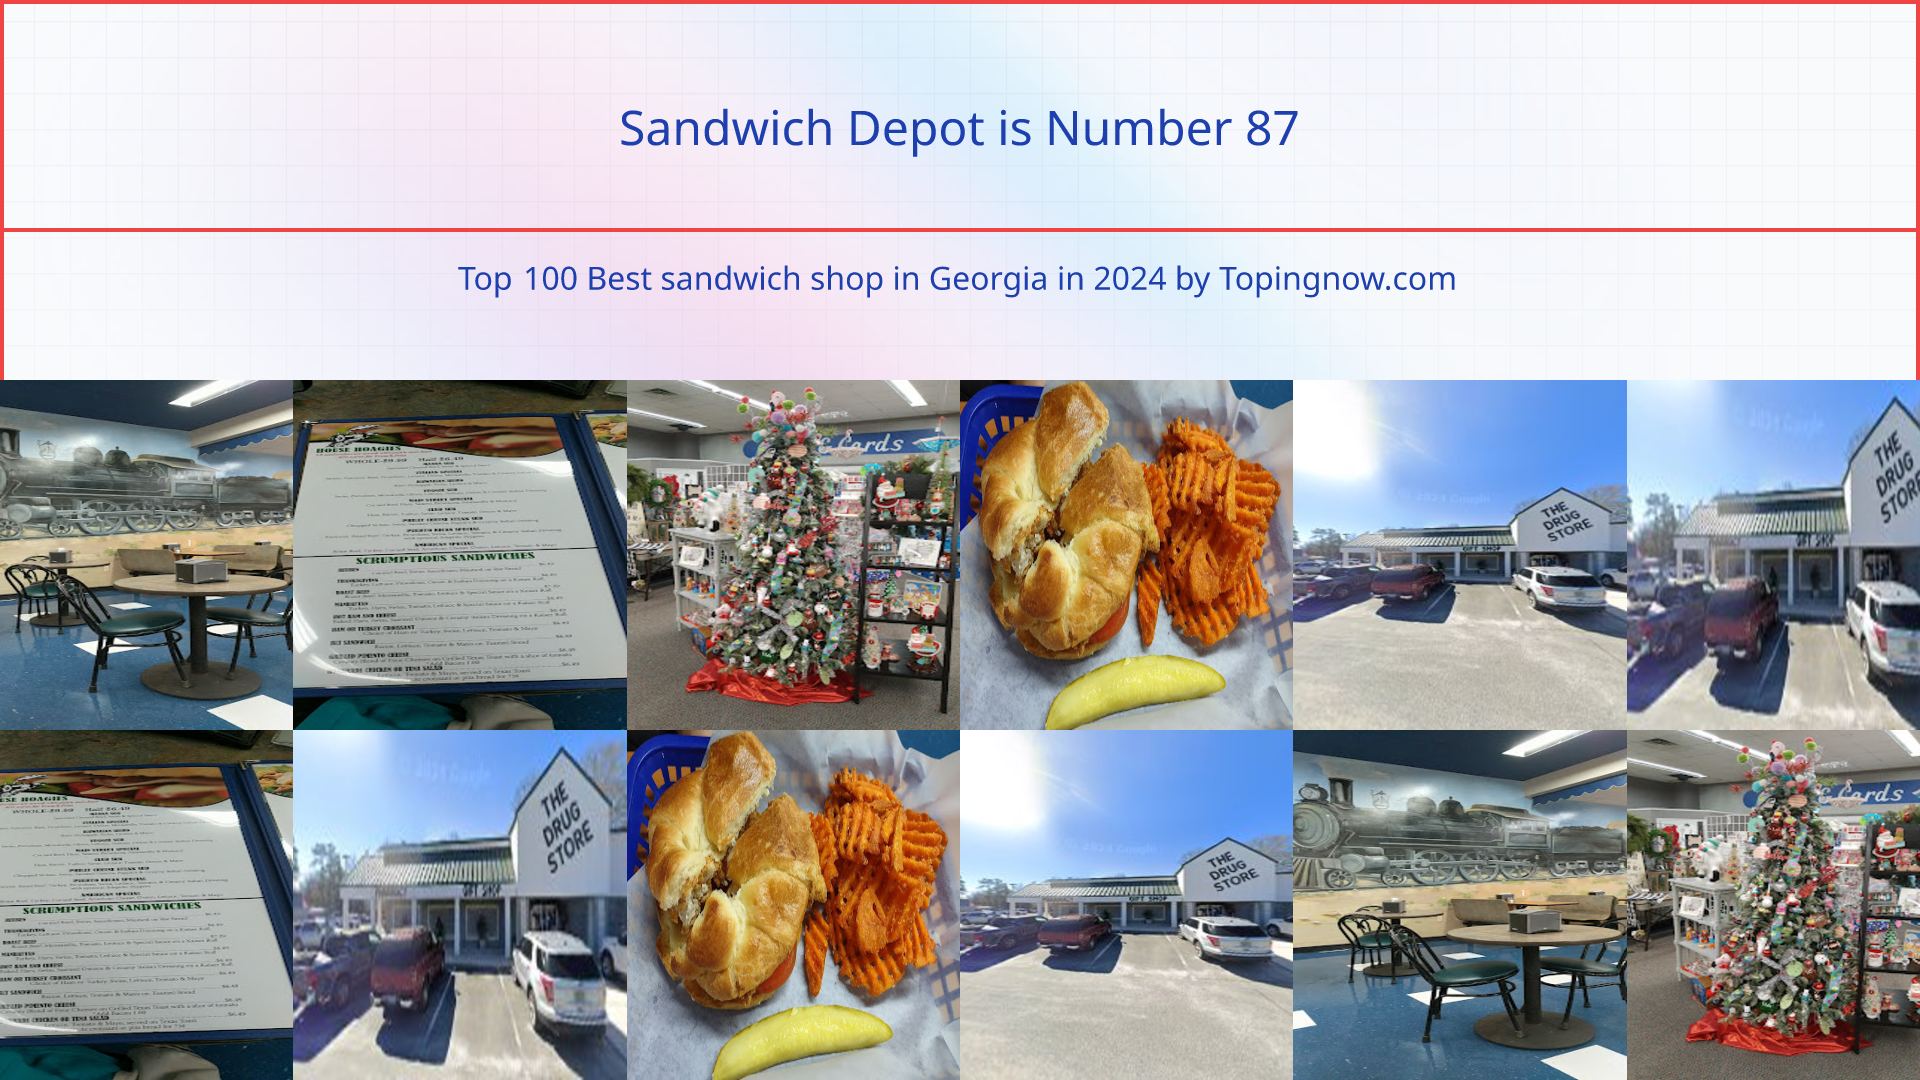 Sandwich Depot: Top 100 Best sandwich shop in Georgia in 2024